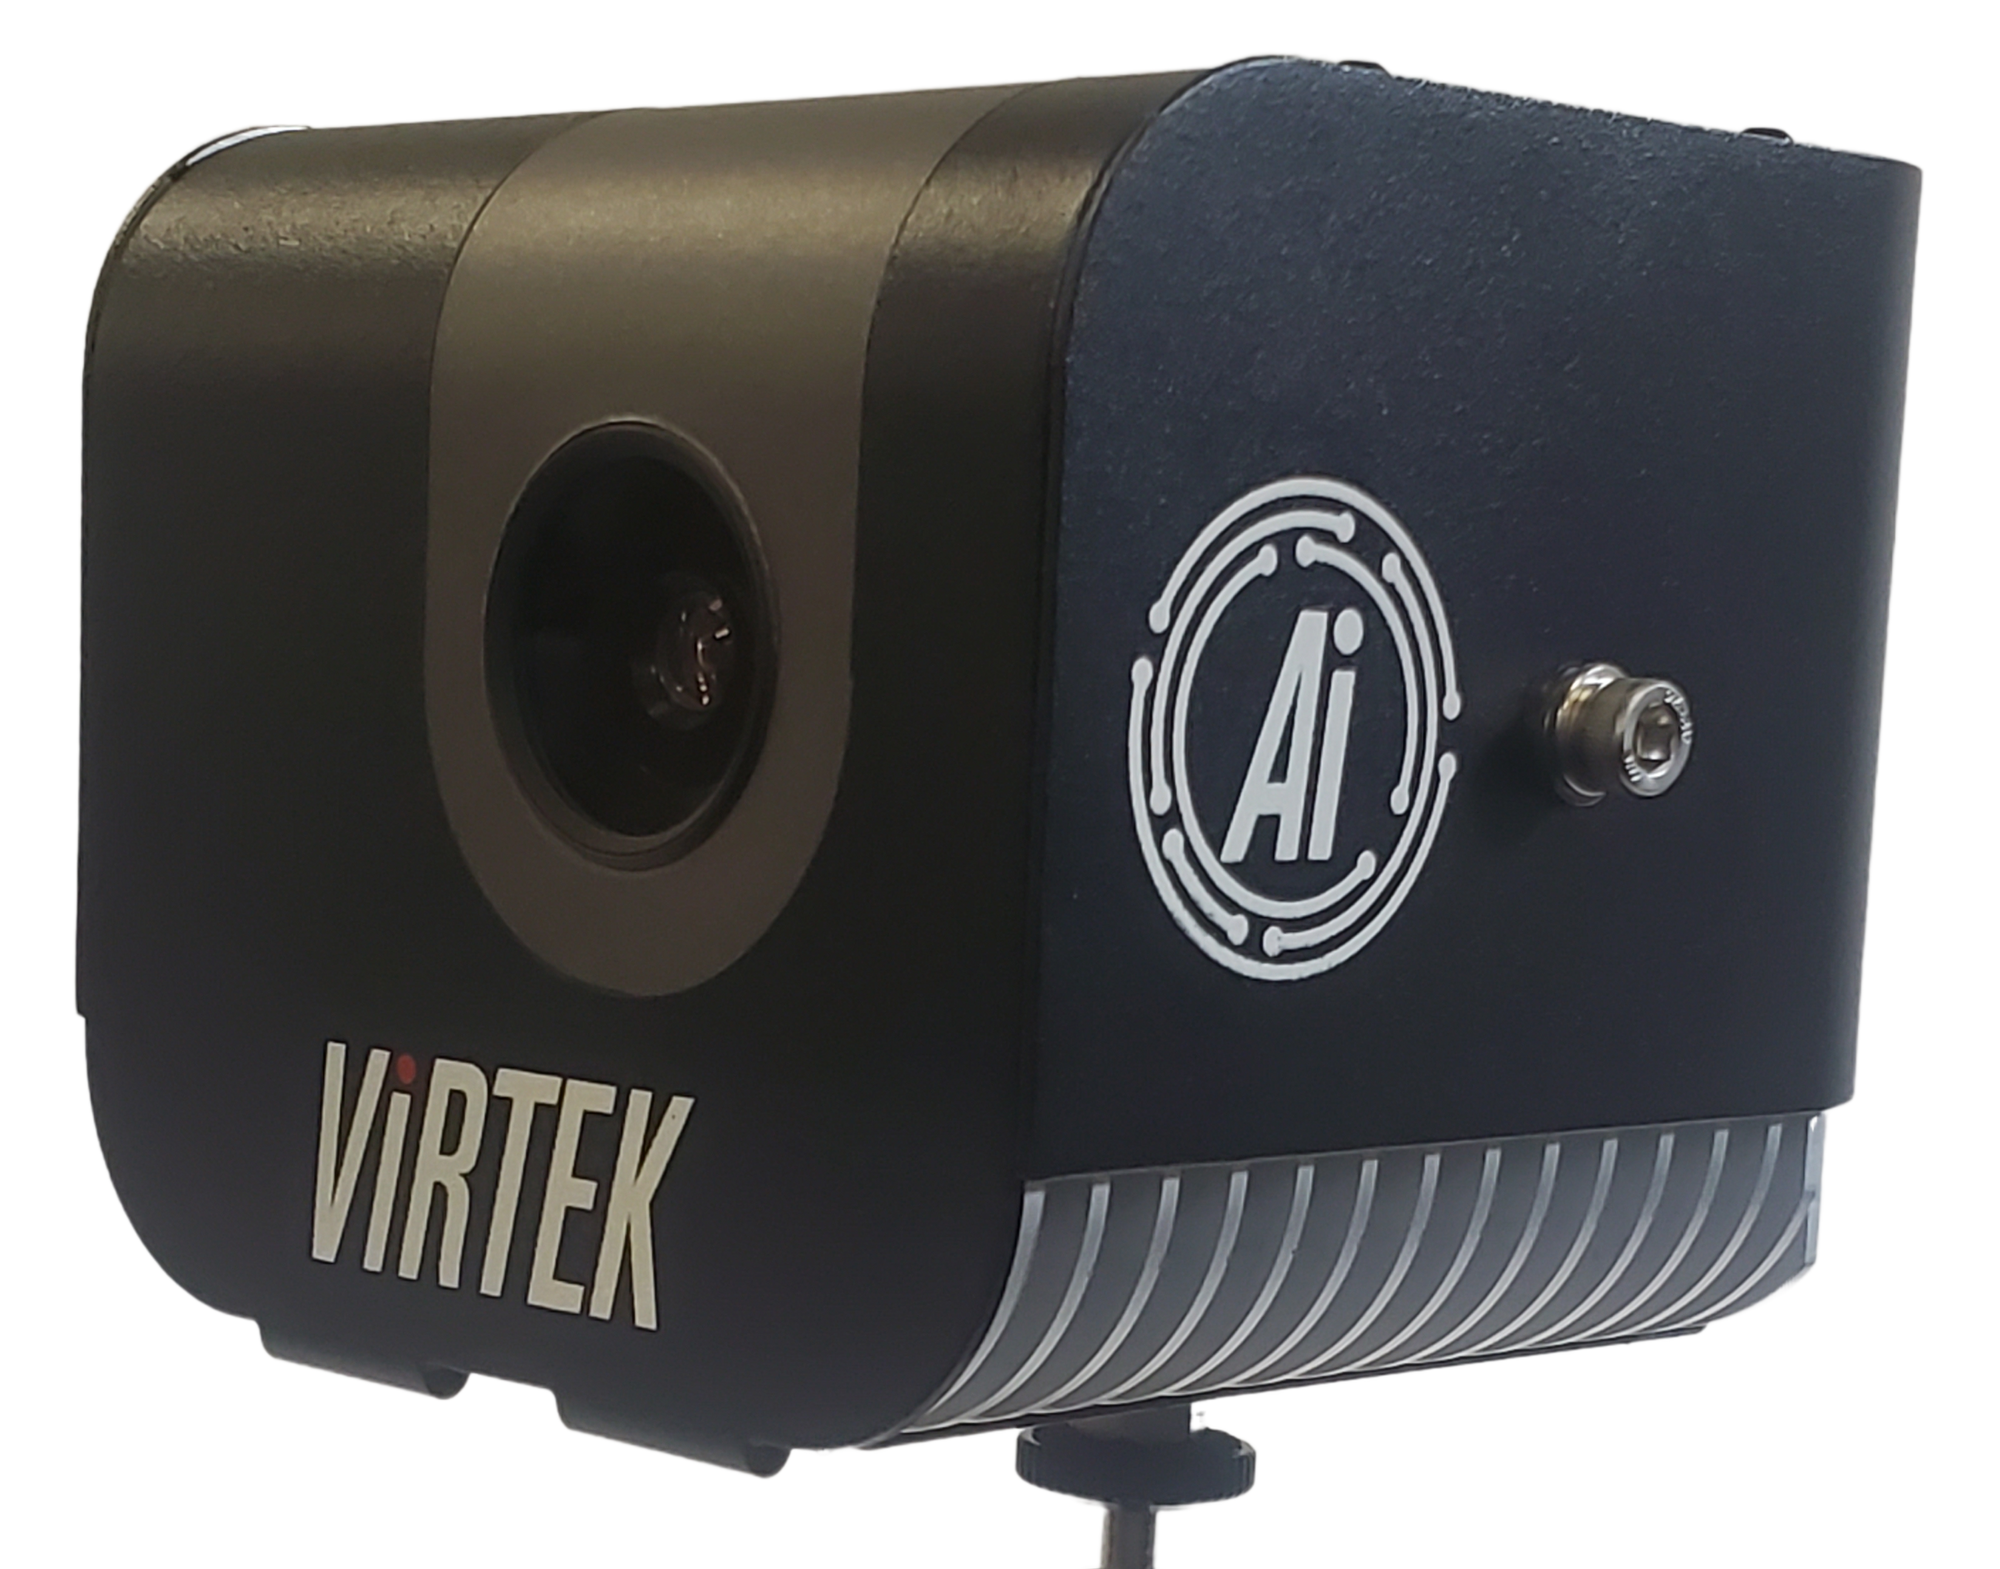 Virtek demostrará IRIS™ 3D con sistema de cámara habilitado para Ai que aporta una visibilidad sin precedentes al flujo de trabajo de fabricación